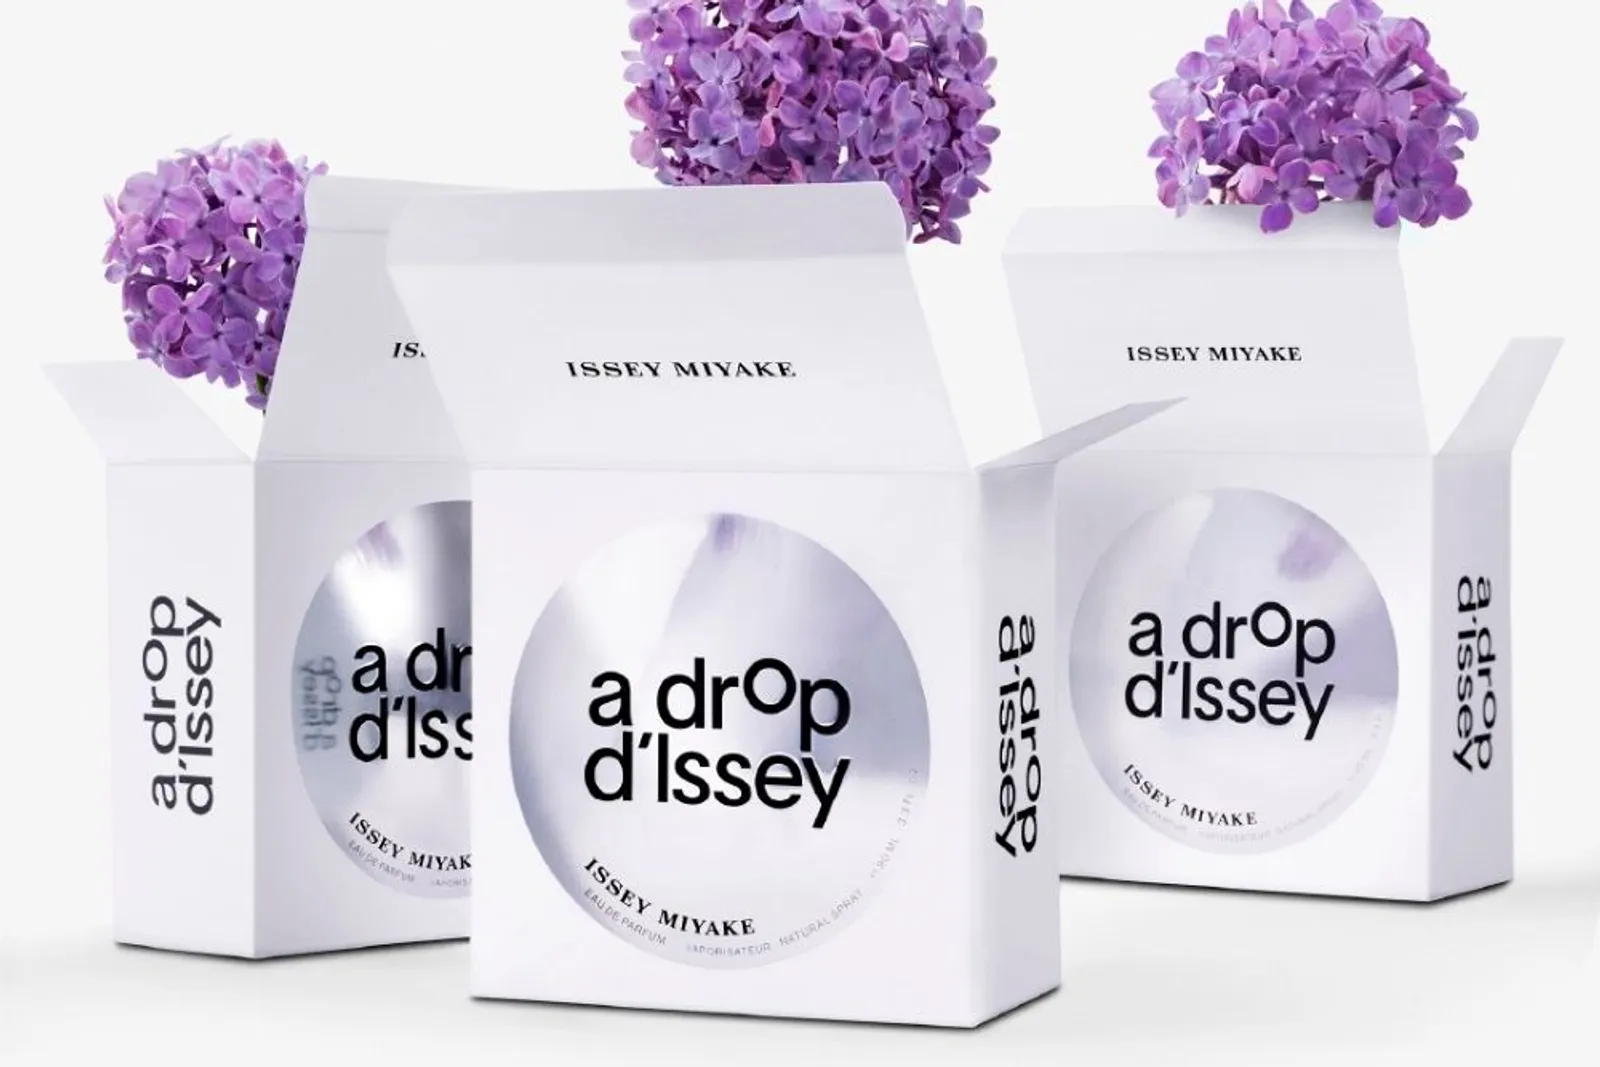 A Drop D'Issey, Parfum Terbaru Issey Miyake yang Terinsipirasi Alam